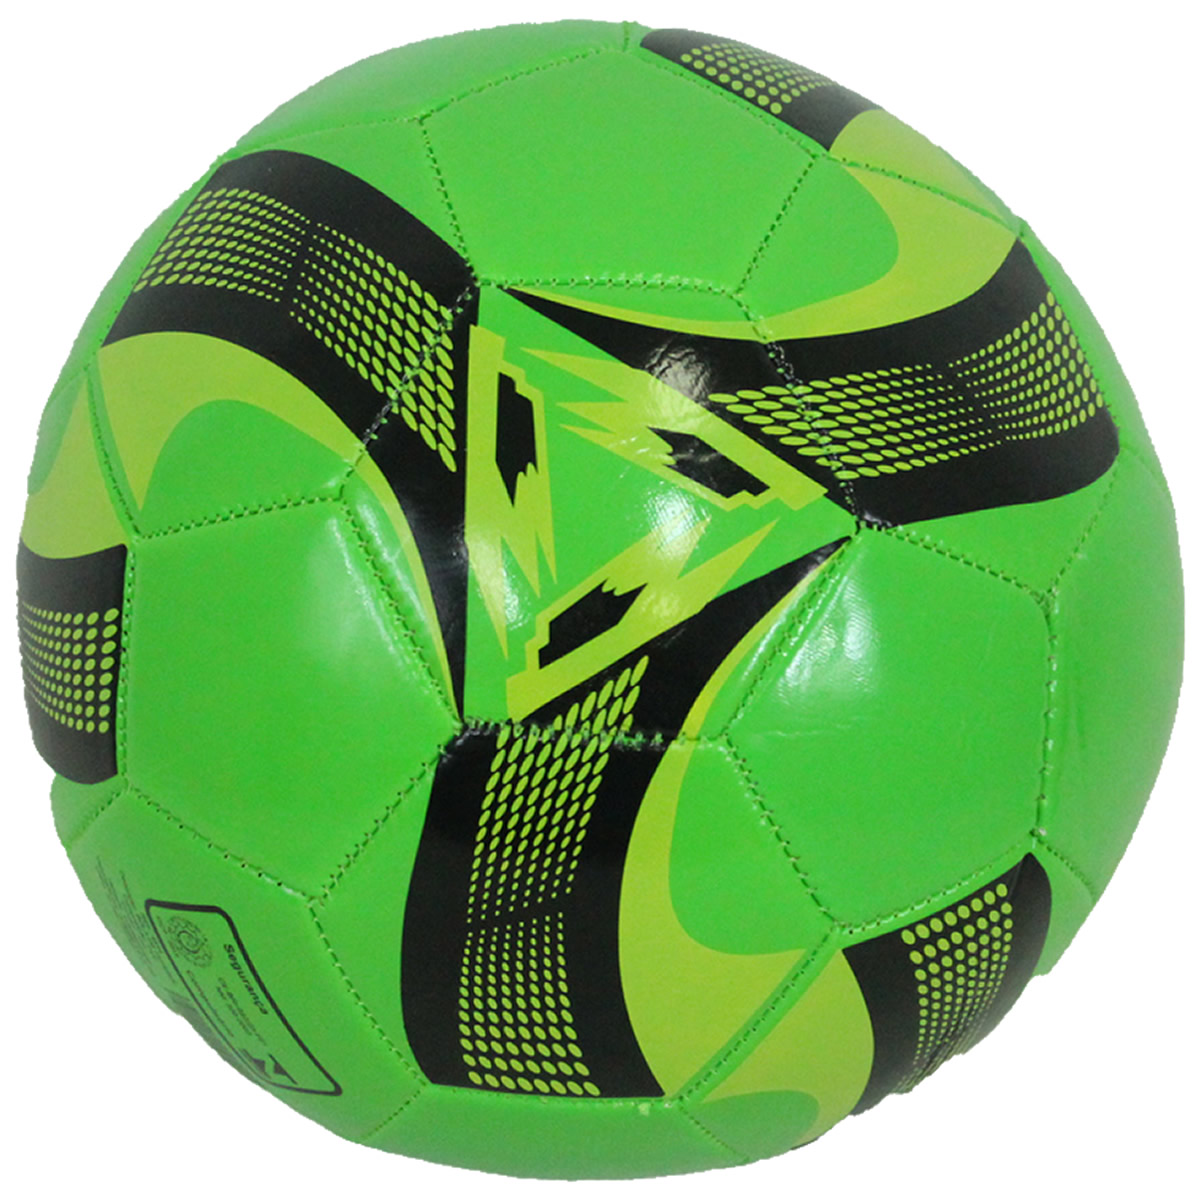 Bola de Futebol de Campo Costurada Tamanho Oficial Amigold - Loja do Competidor